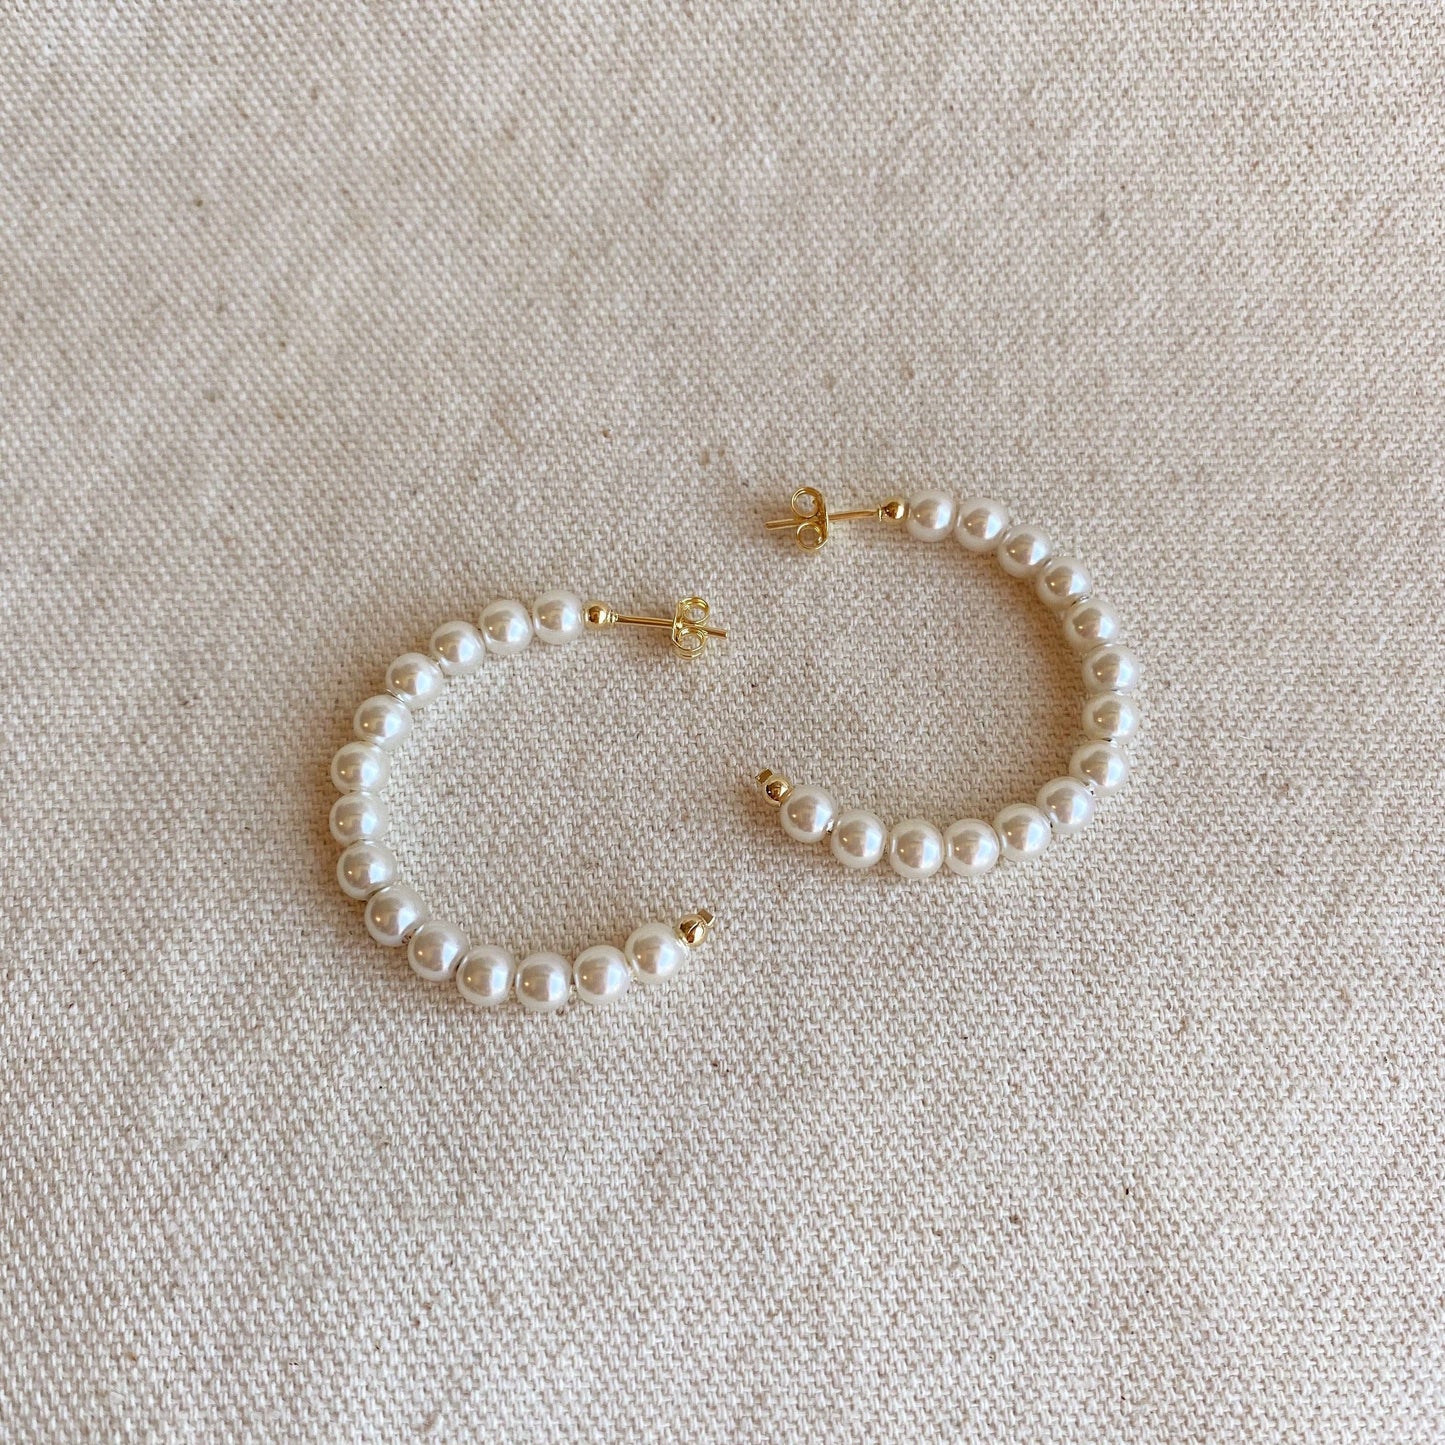 35mm Pearl hoop earrings hypoallergenic 18 karat gold filled 